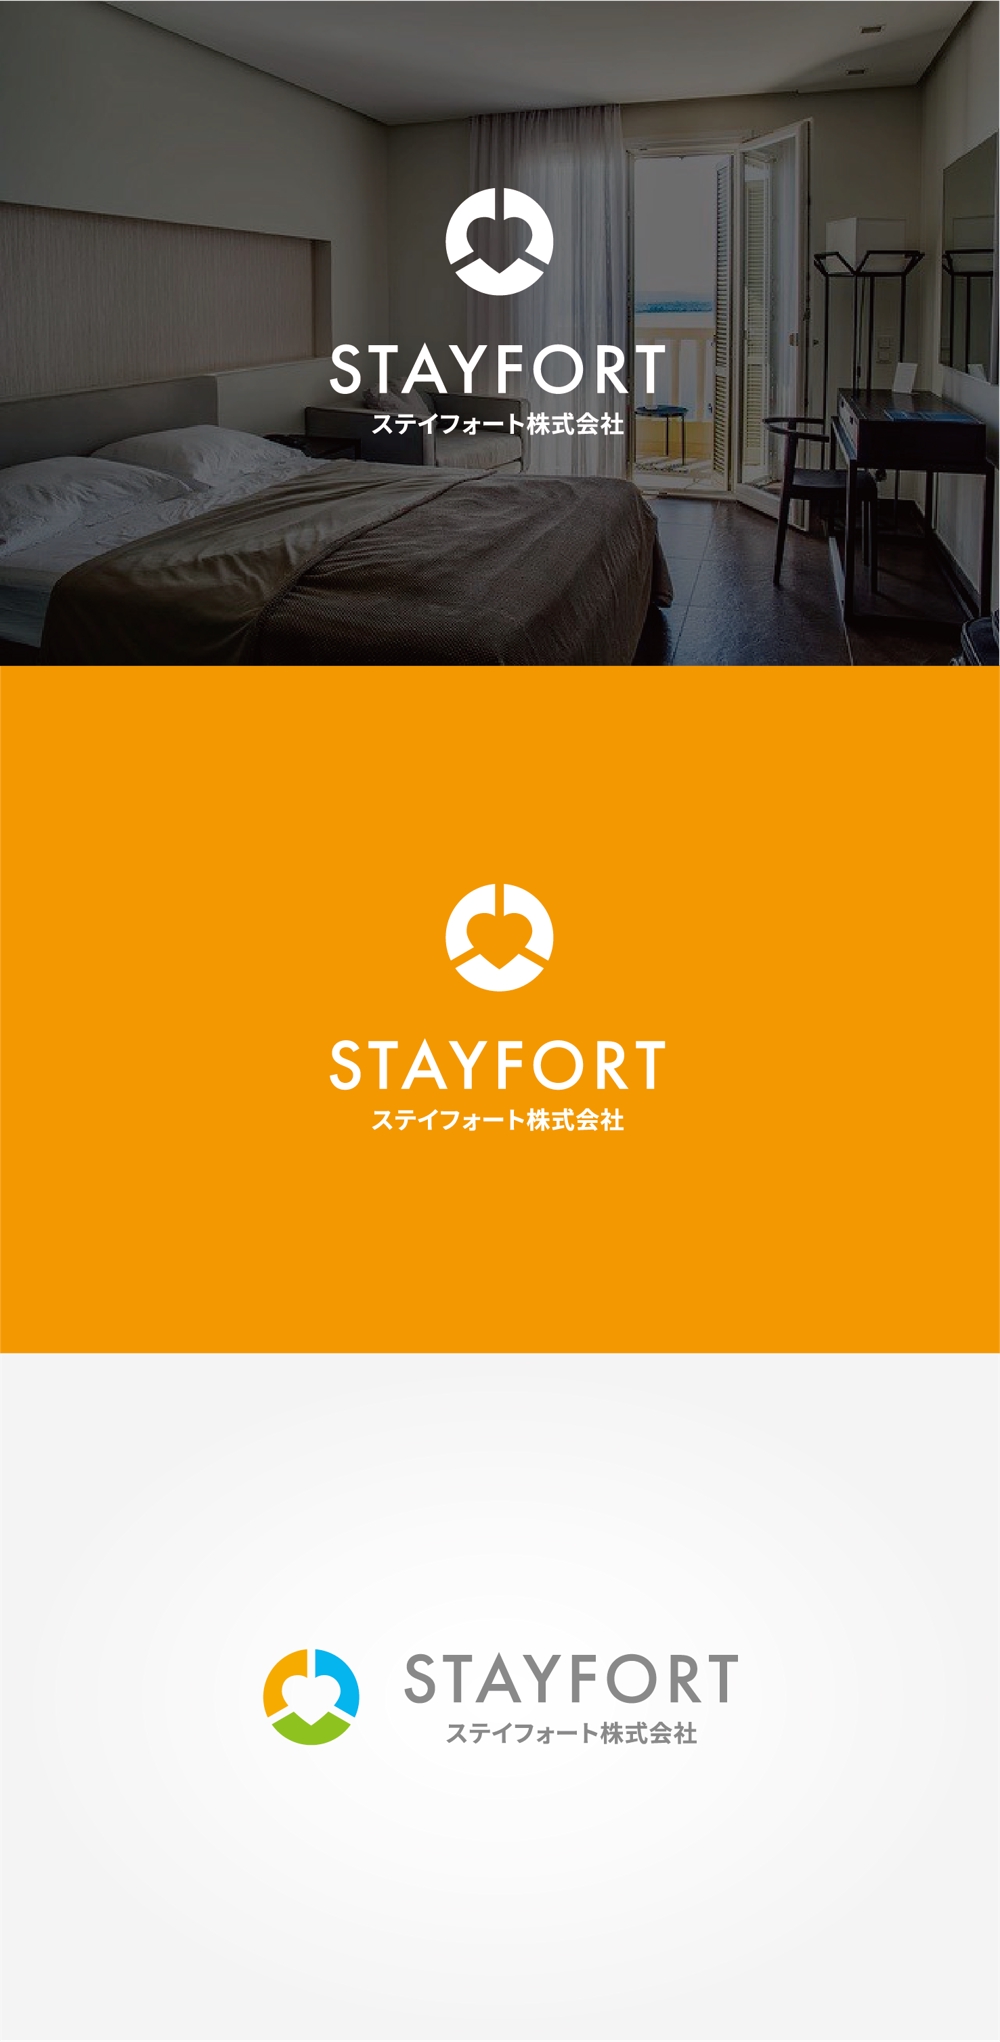 ビジネスホテルと障害福祉サービスの会社「ステイフォート株式会社」のロゴ